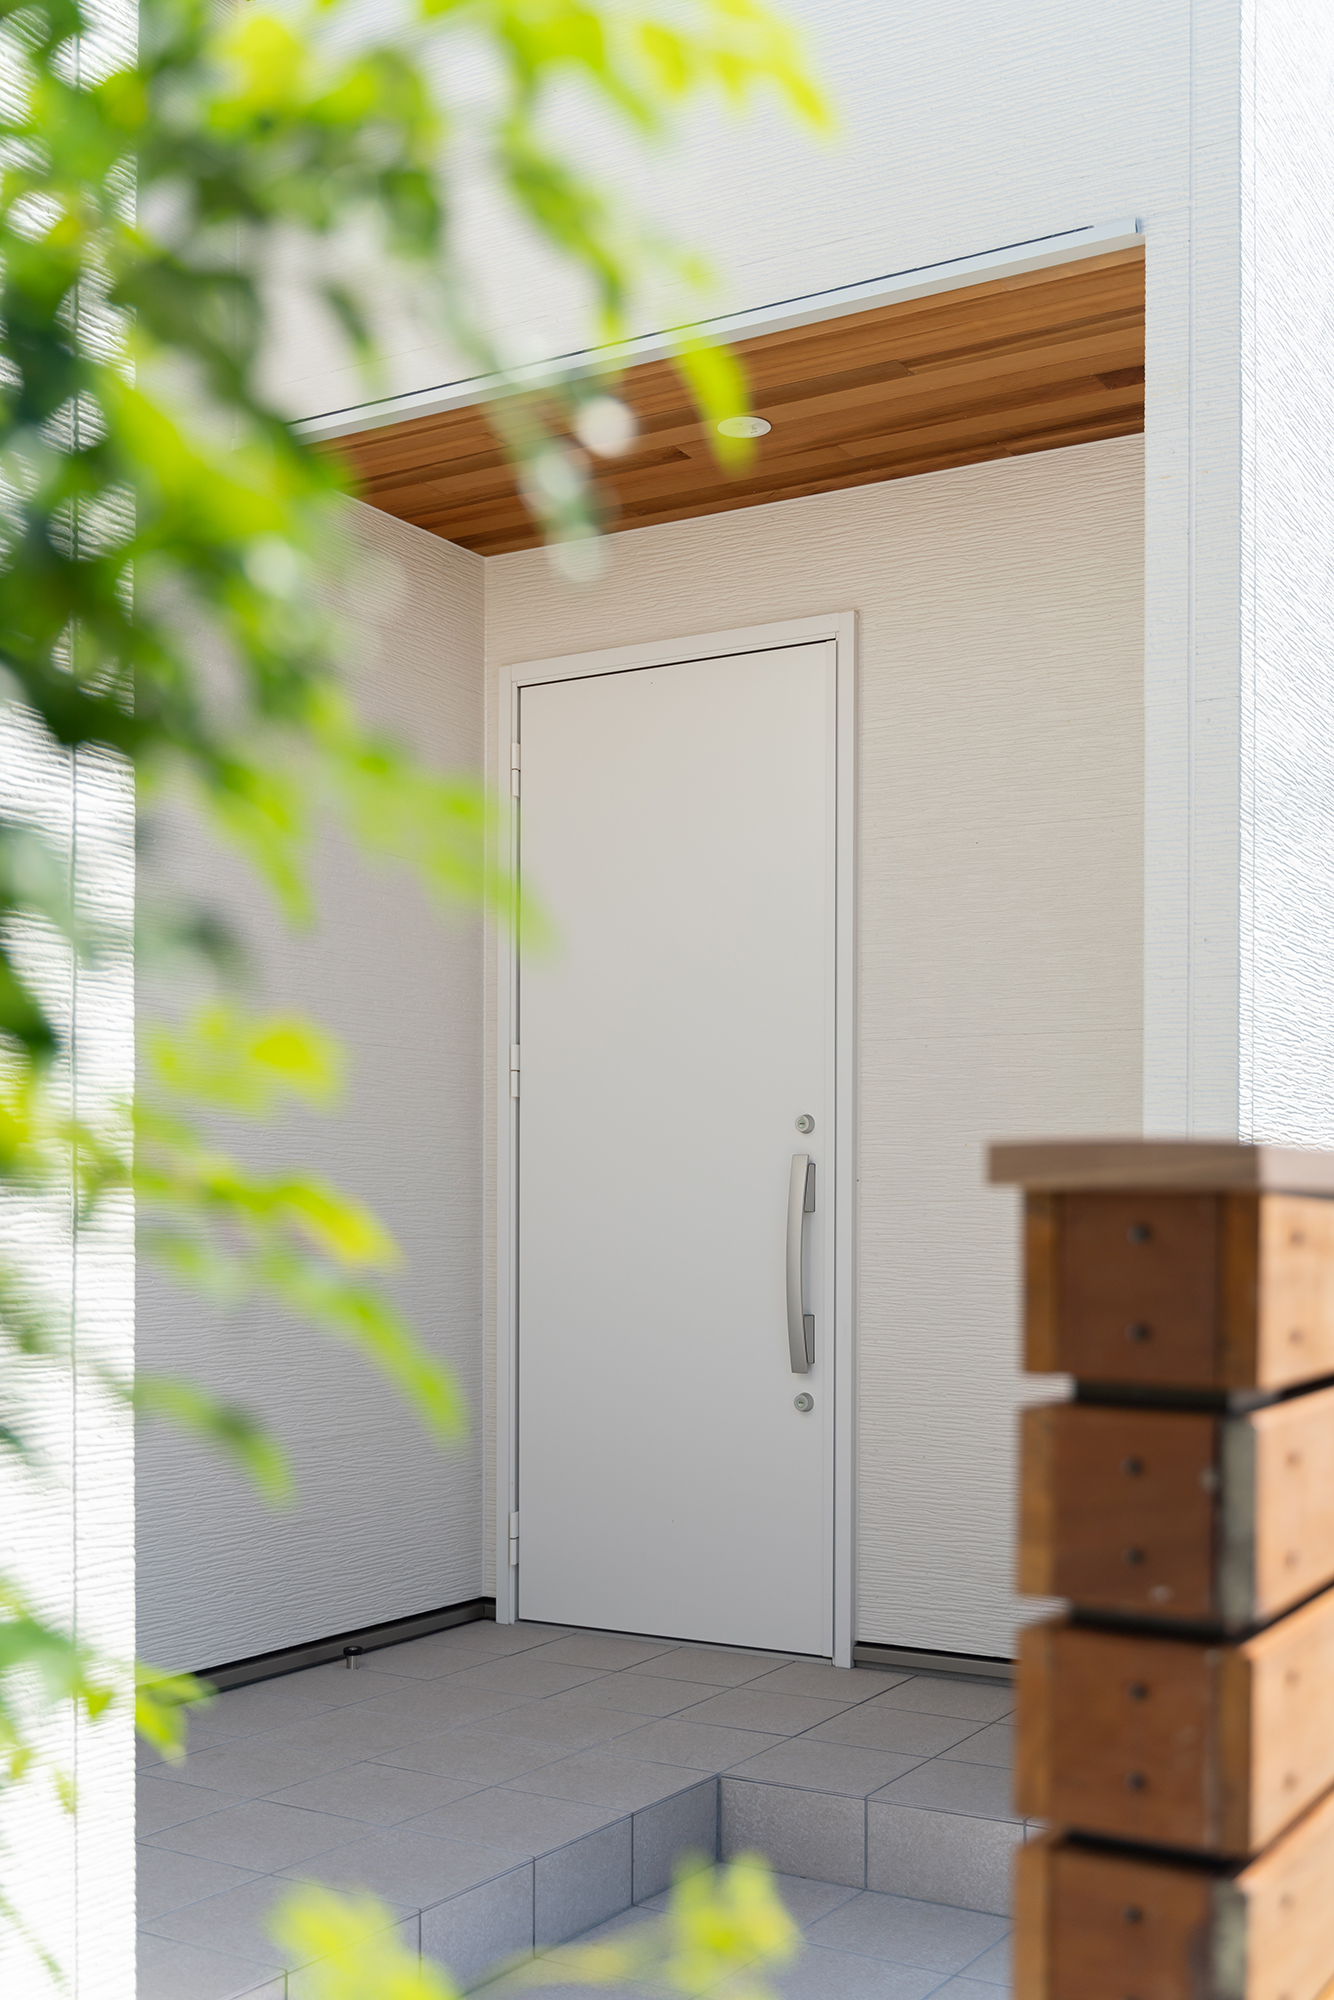 余計な装飾を施さず、白と木目でまとめたシンプルな玄関周り。軒に貼られたレッドシダーは室内側へと連続